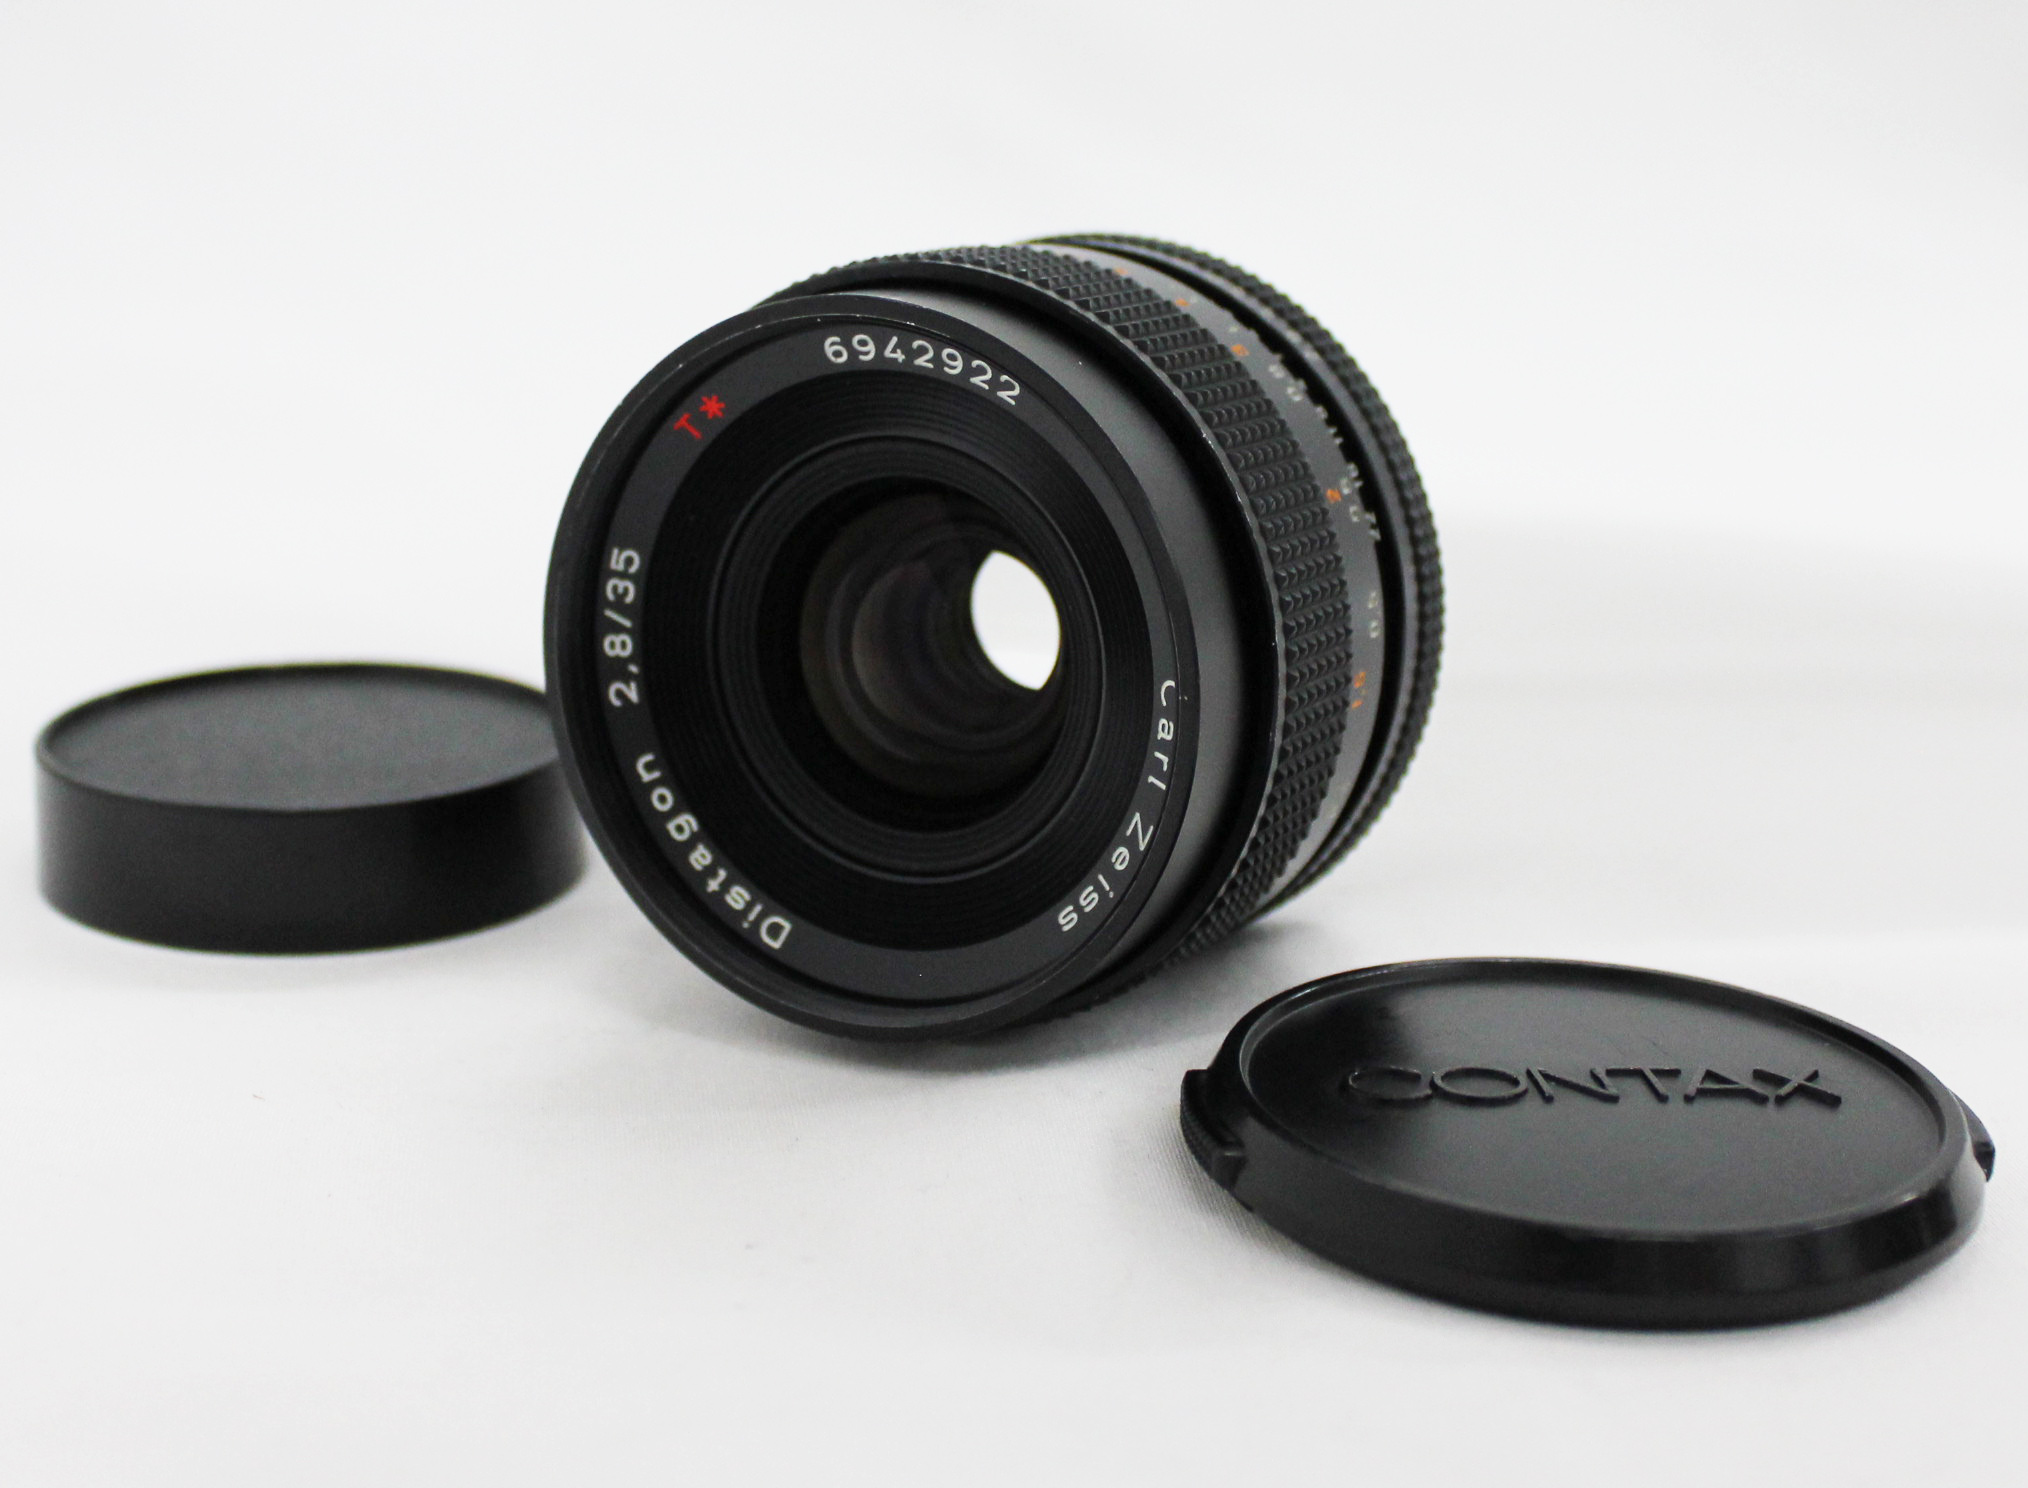 [Near Mint] Contax Carl Zeiss Distagon T* 35mm F2.8 MMJ MF Lens from Japan